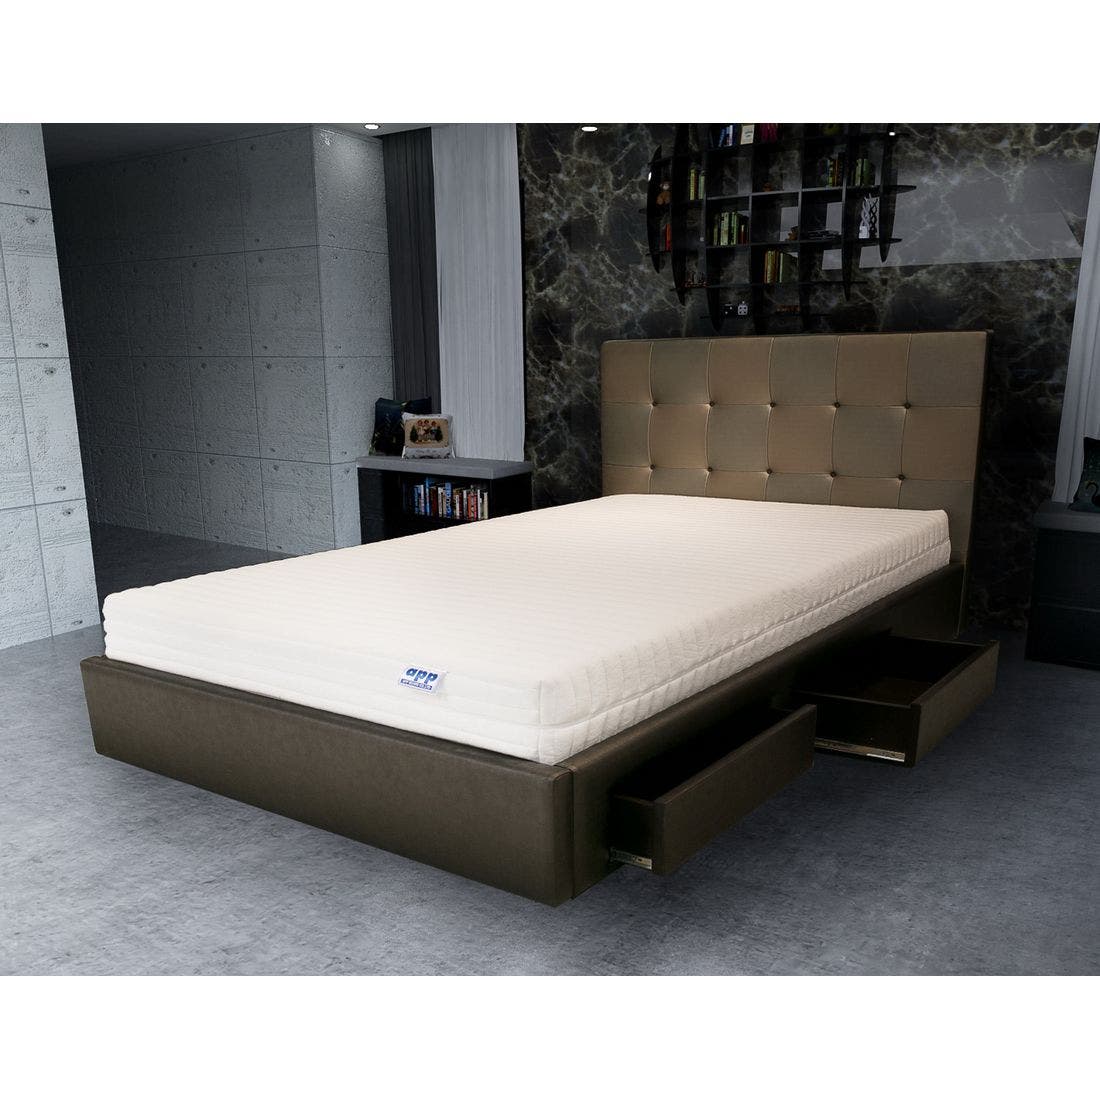 39001671-mattress-bedding-mattresses-latex-mattresses-31